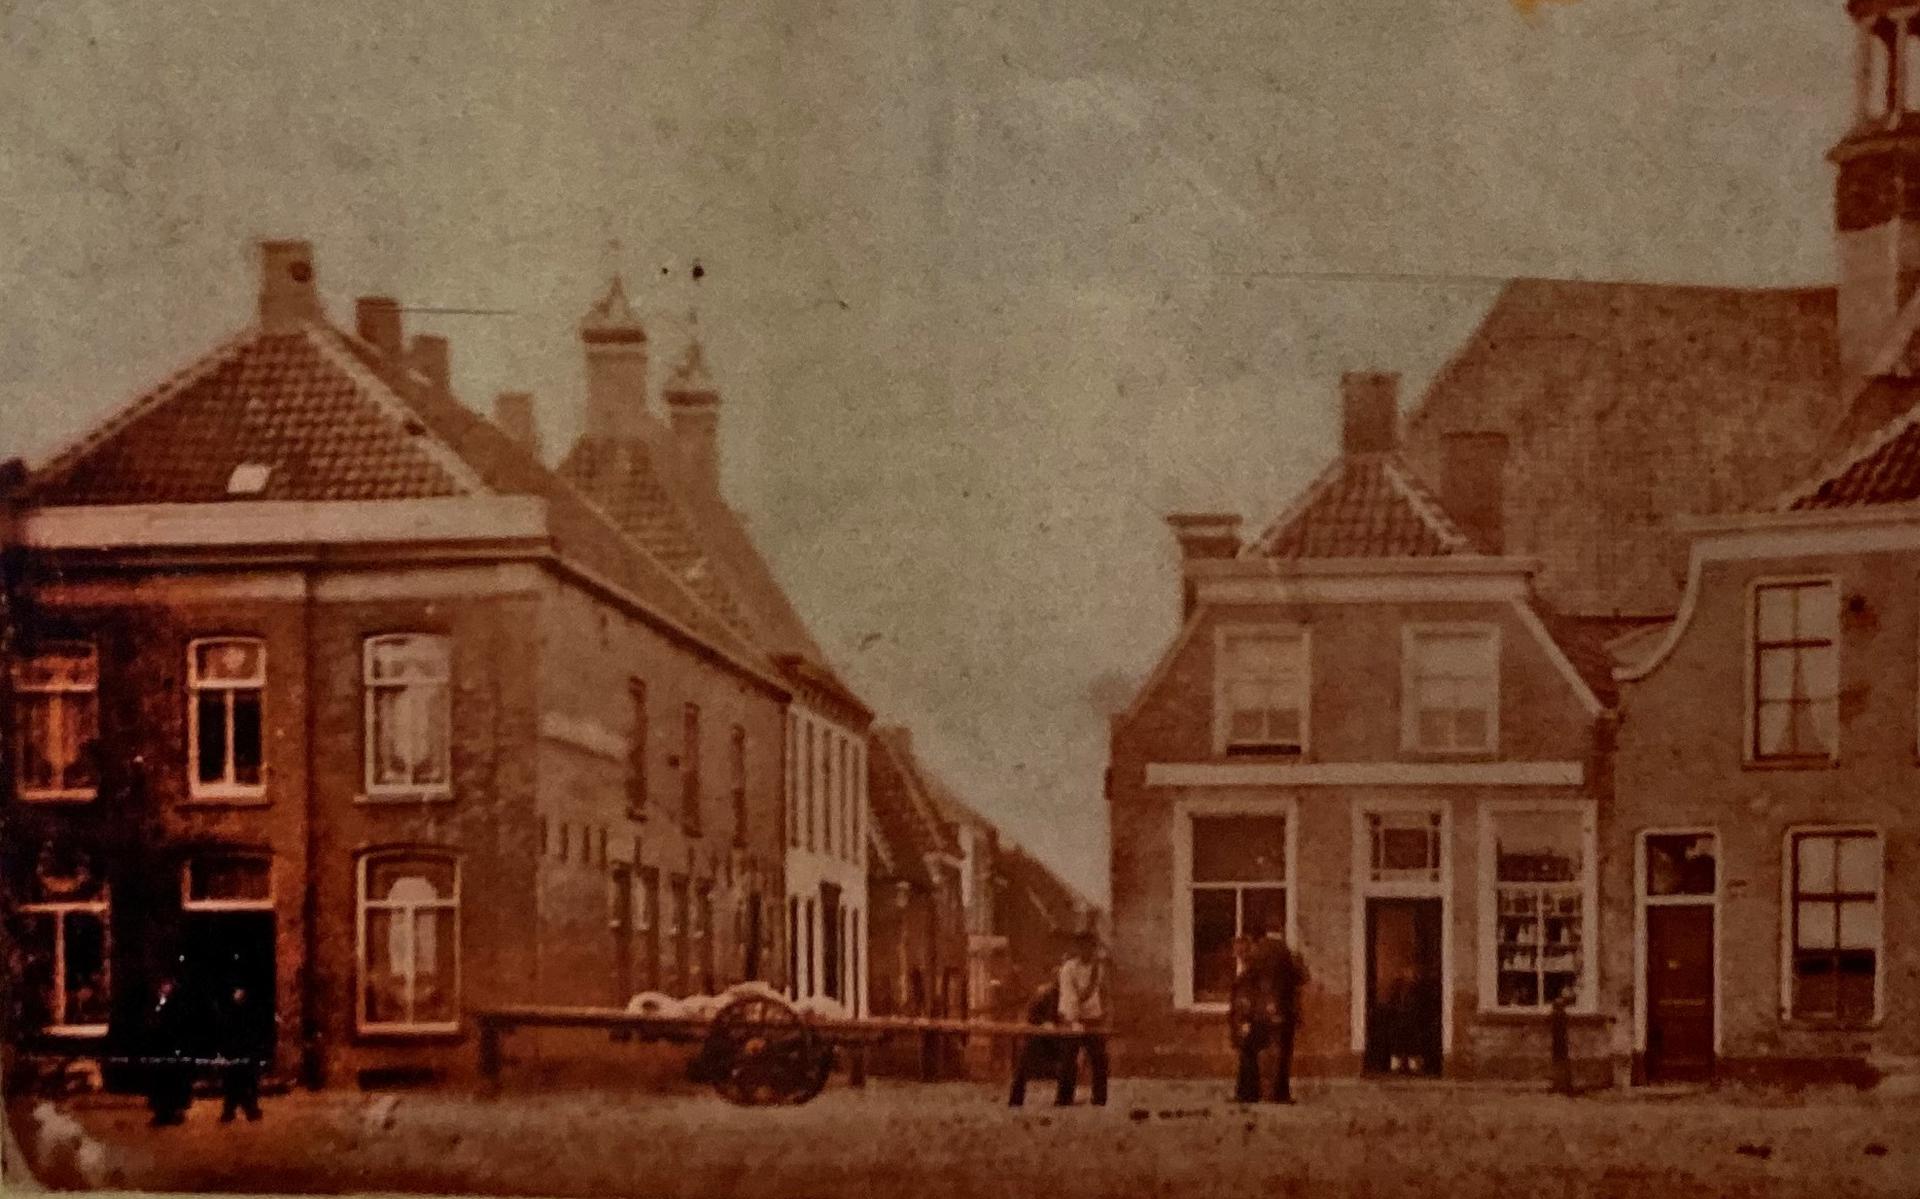 De oudst bekende foto van Coevorden werd rond 1890 gemaakt door fotobedrijf Sanders & Co uit Groningen